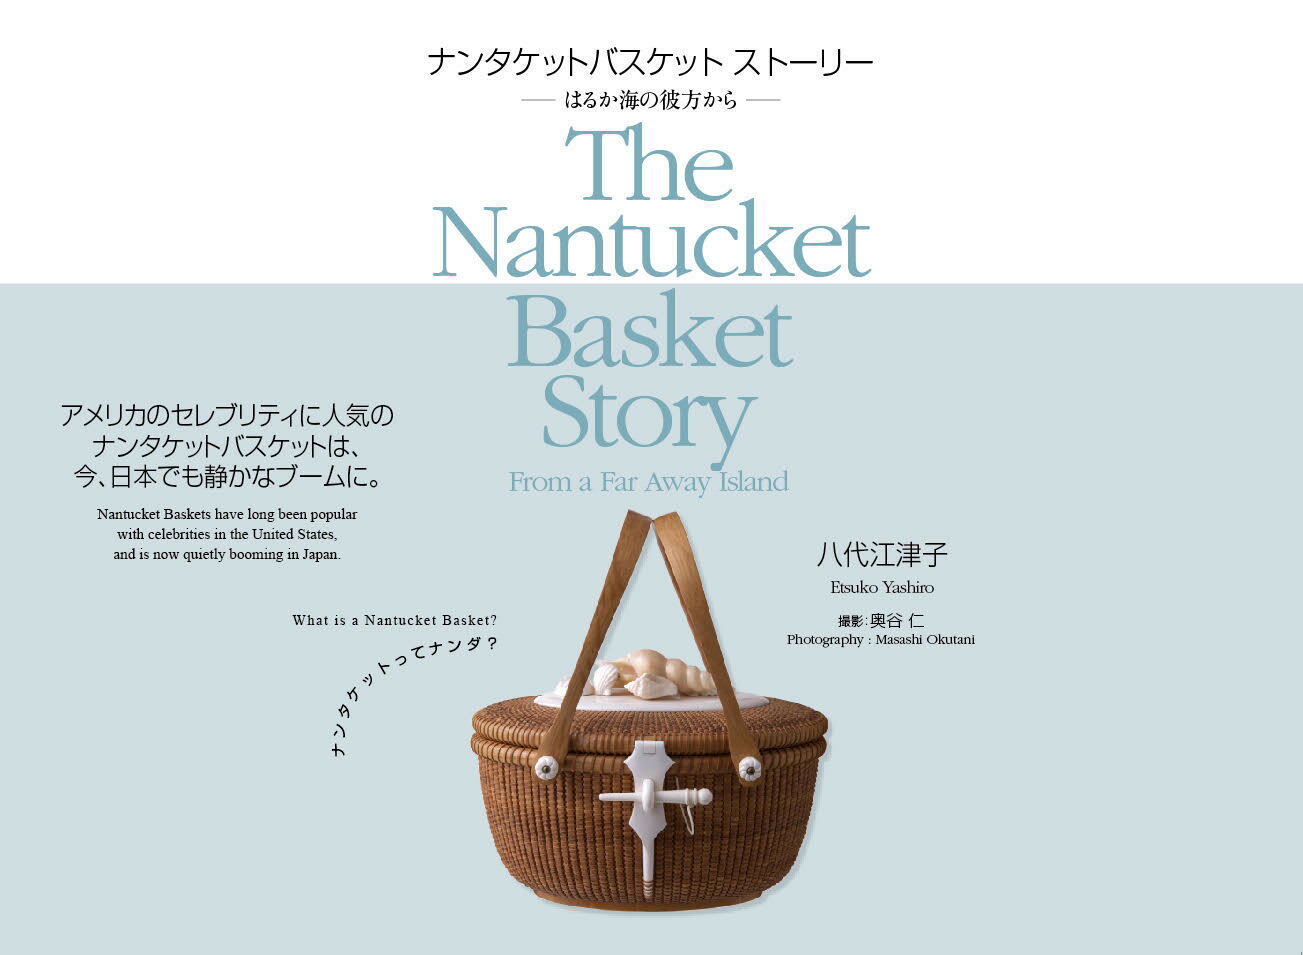 ナンタケット島で日本人として唯一認められたナンタケットバスケット作家、八代江津子が紹介するナンタケットバスケットの世界。島と捕鯨の歴史・バスケットの誕生と発展、その美しさと魅力のすべて。